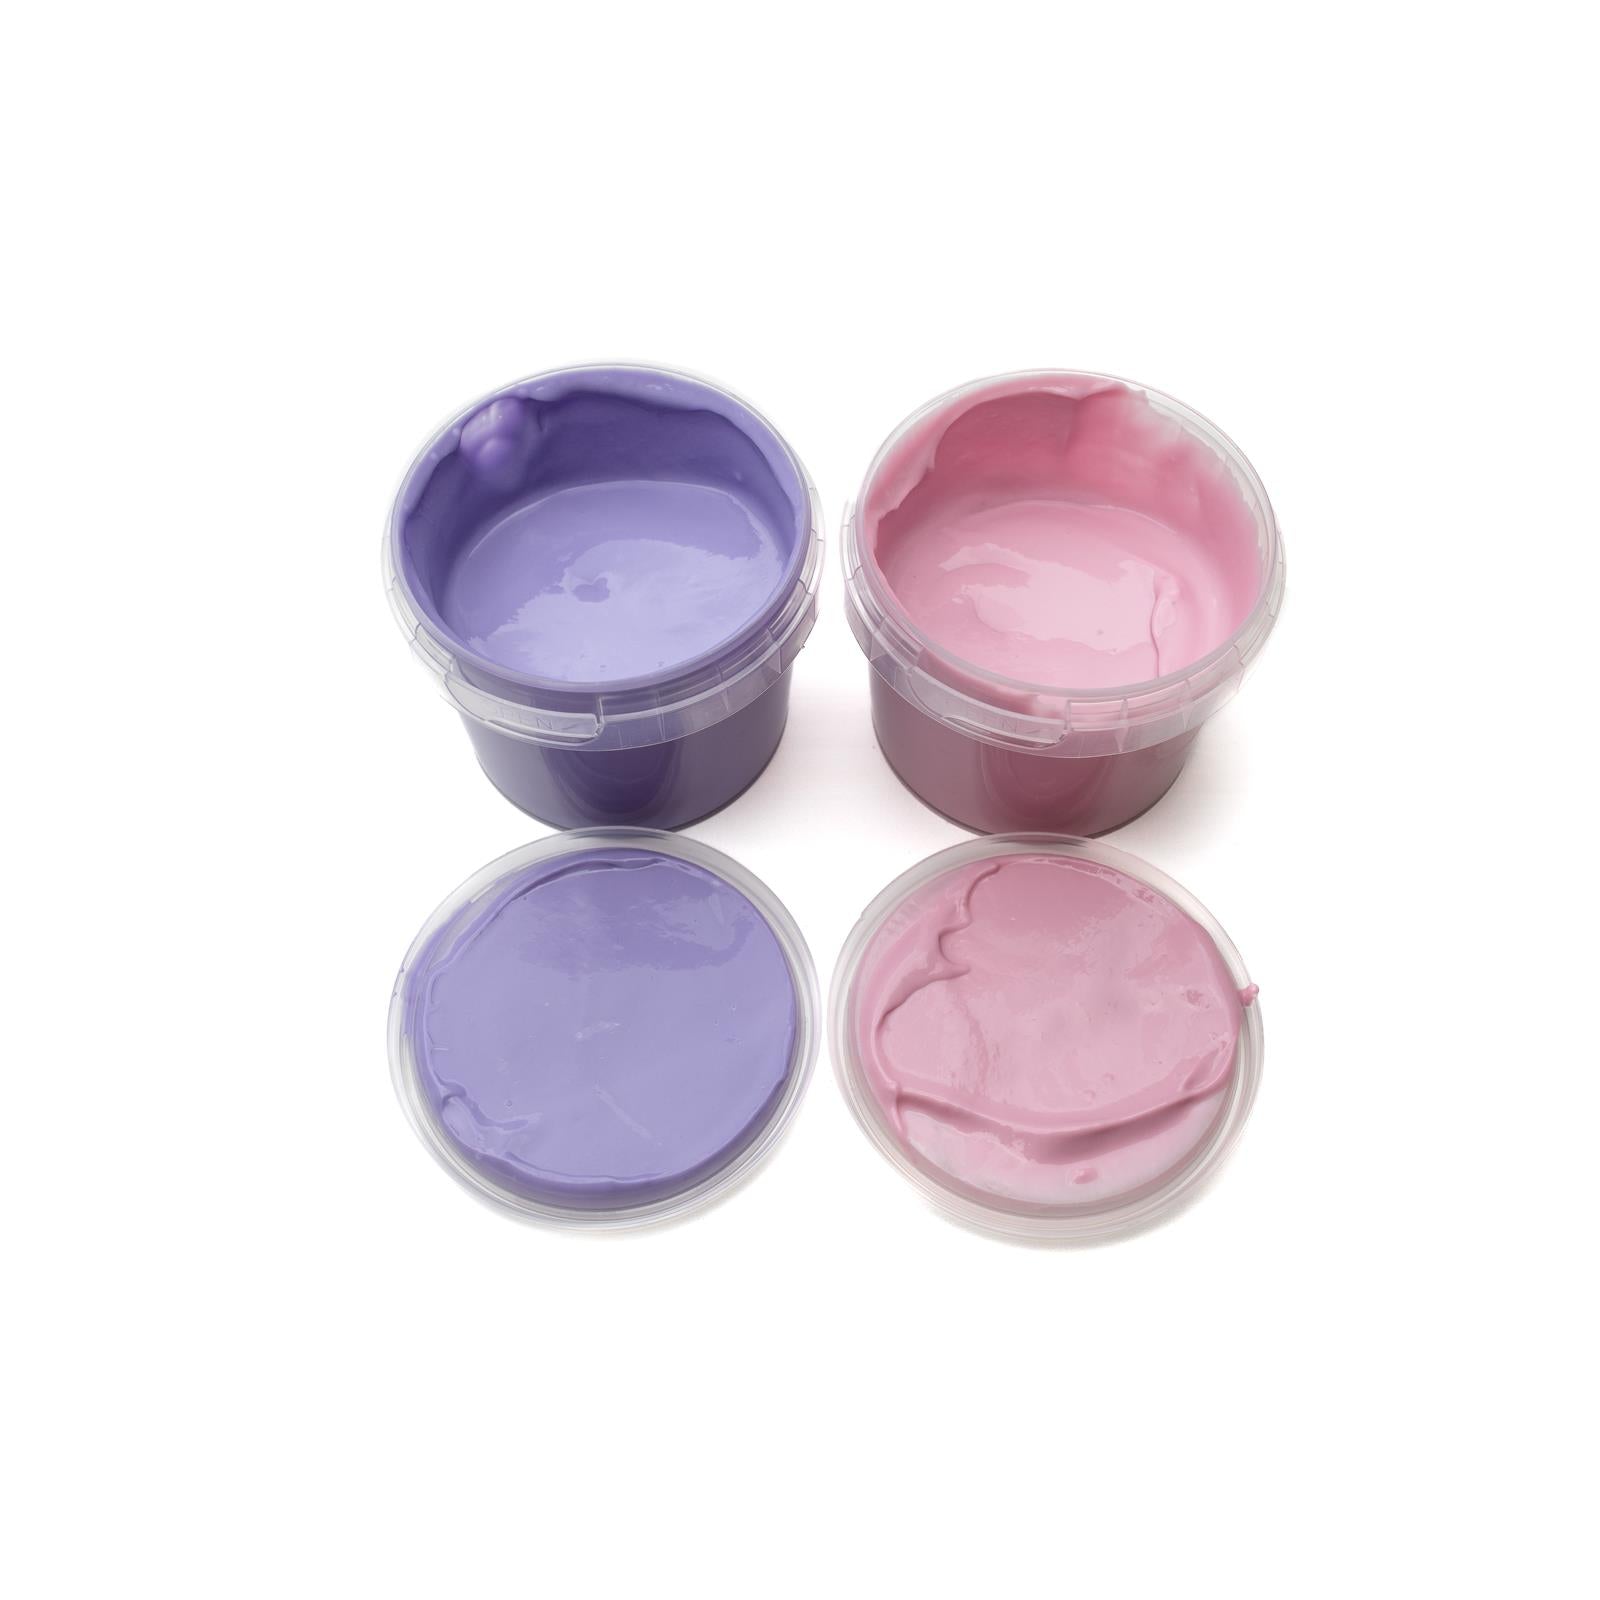 Finger paint set of 2 "Nori" pink/violet